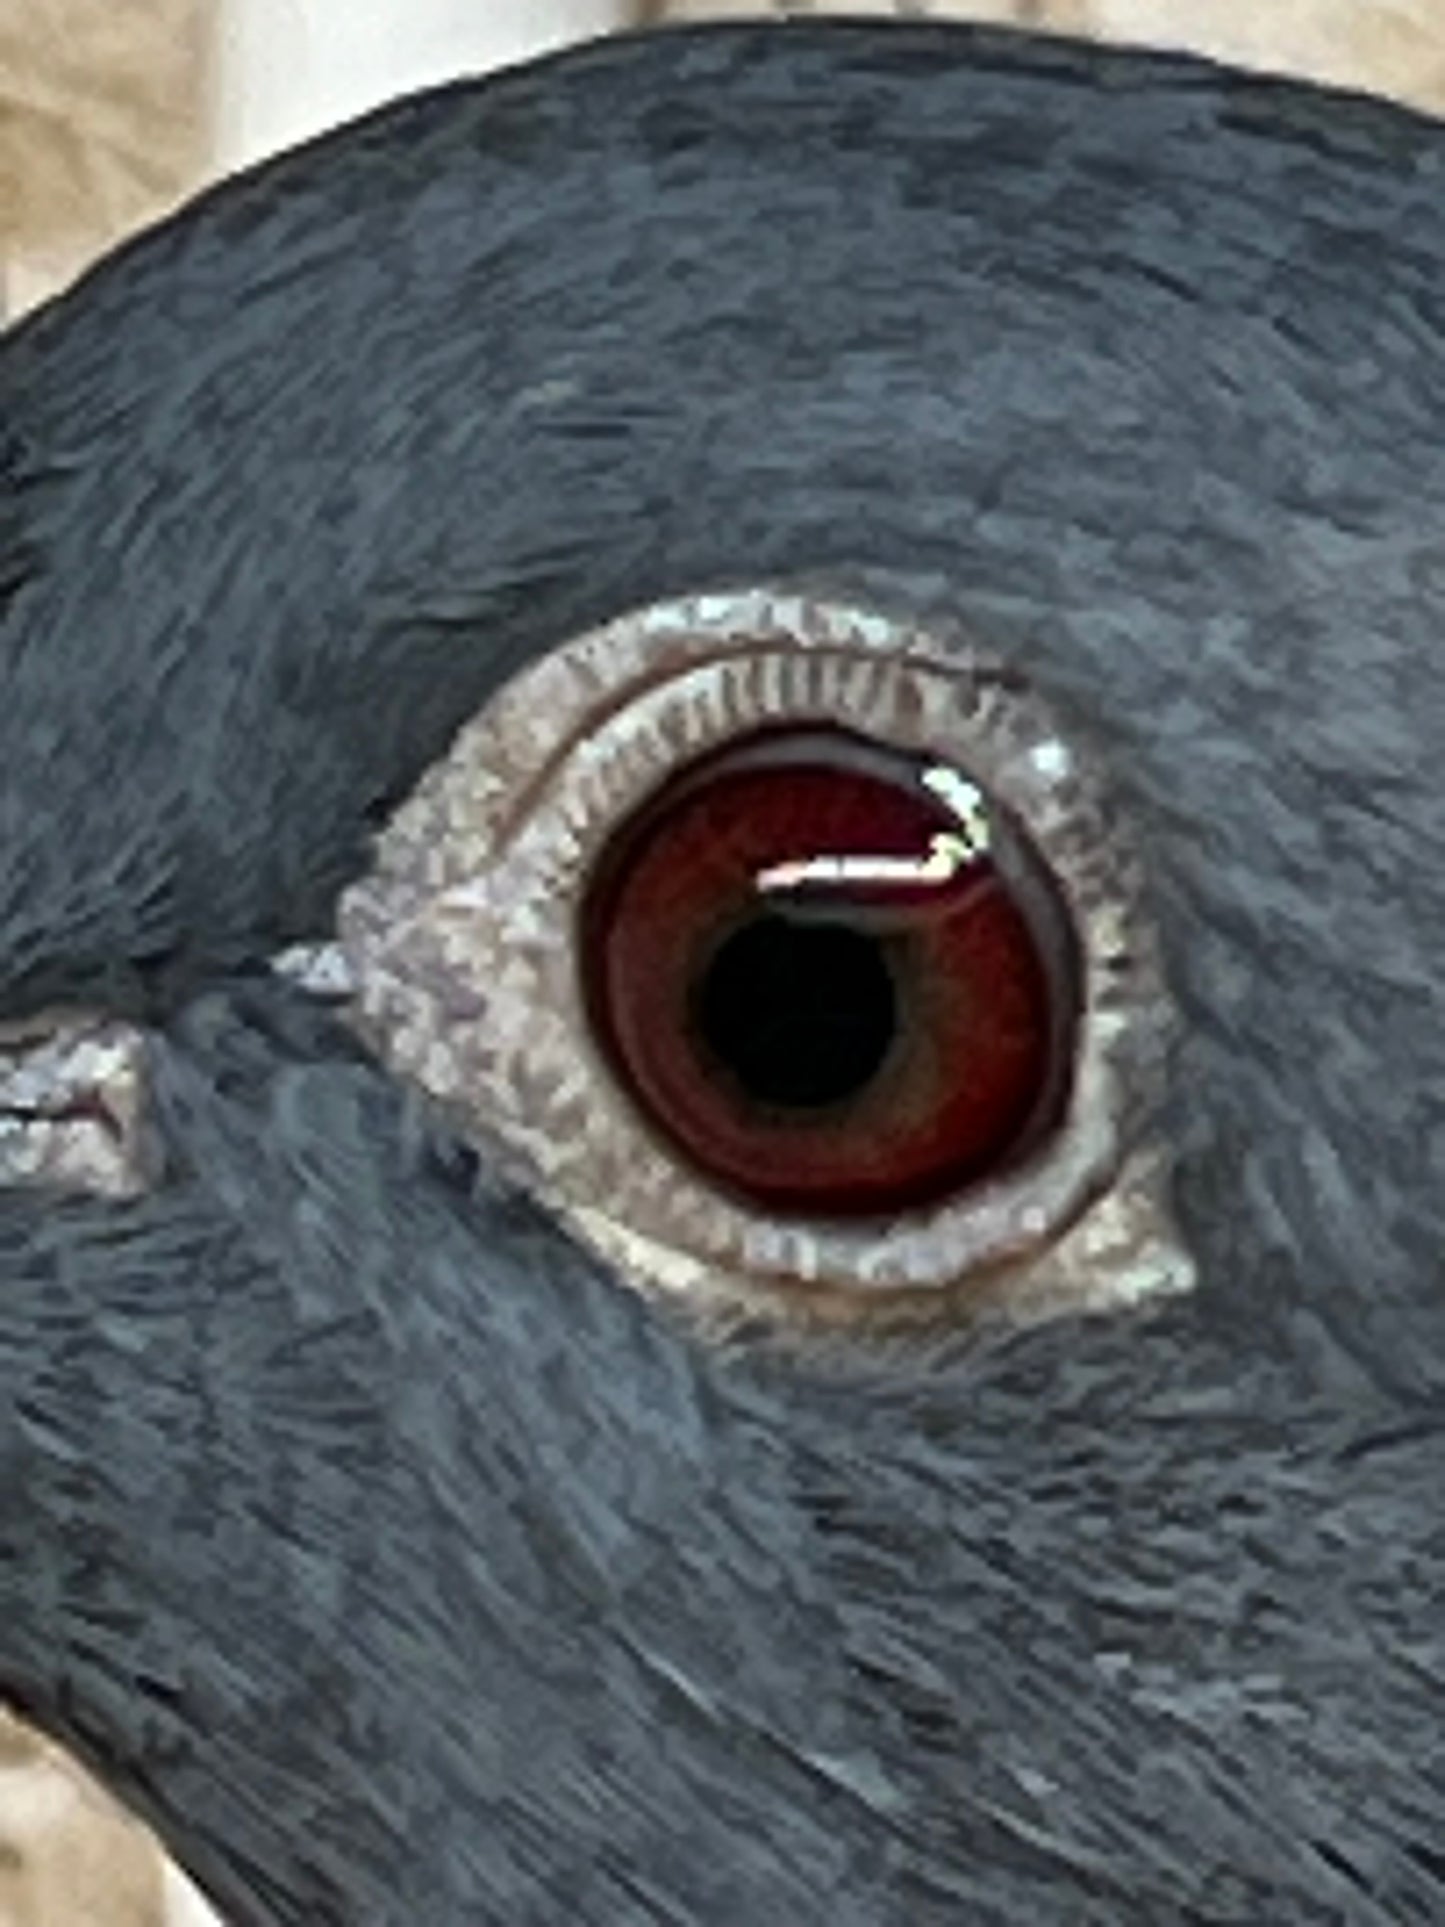 Black Eagle Pigeon "99194" Hen